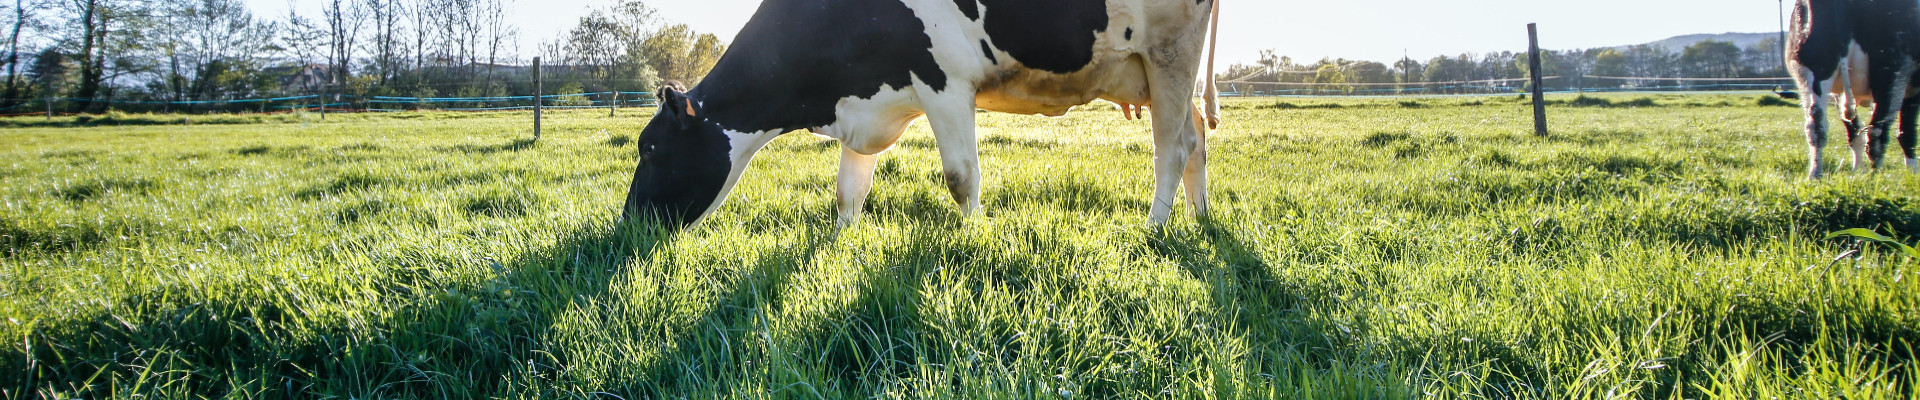 Suurim mainega ettevõte PAUNVERE AGRO OÜ, maineskoor 5960, aktiivseid äriseoseid 2. Tegutseb peamiselt valdkonnas: Piimakarjakasvatus.